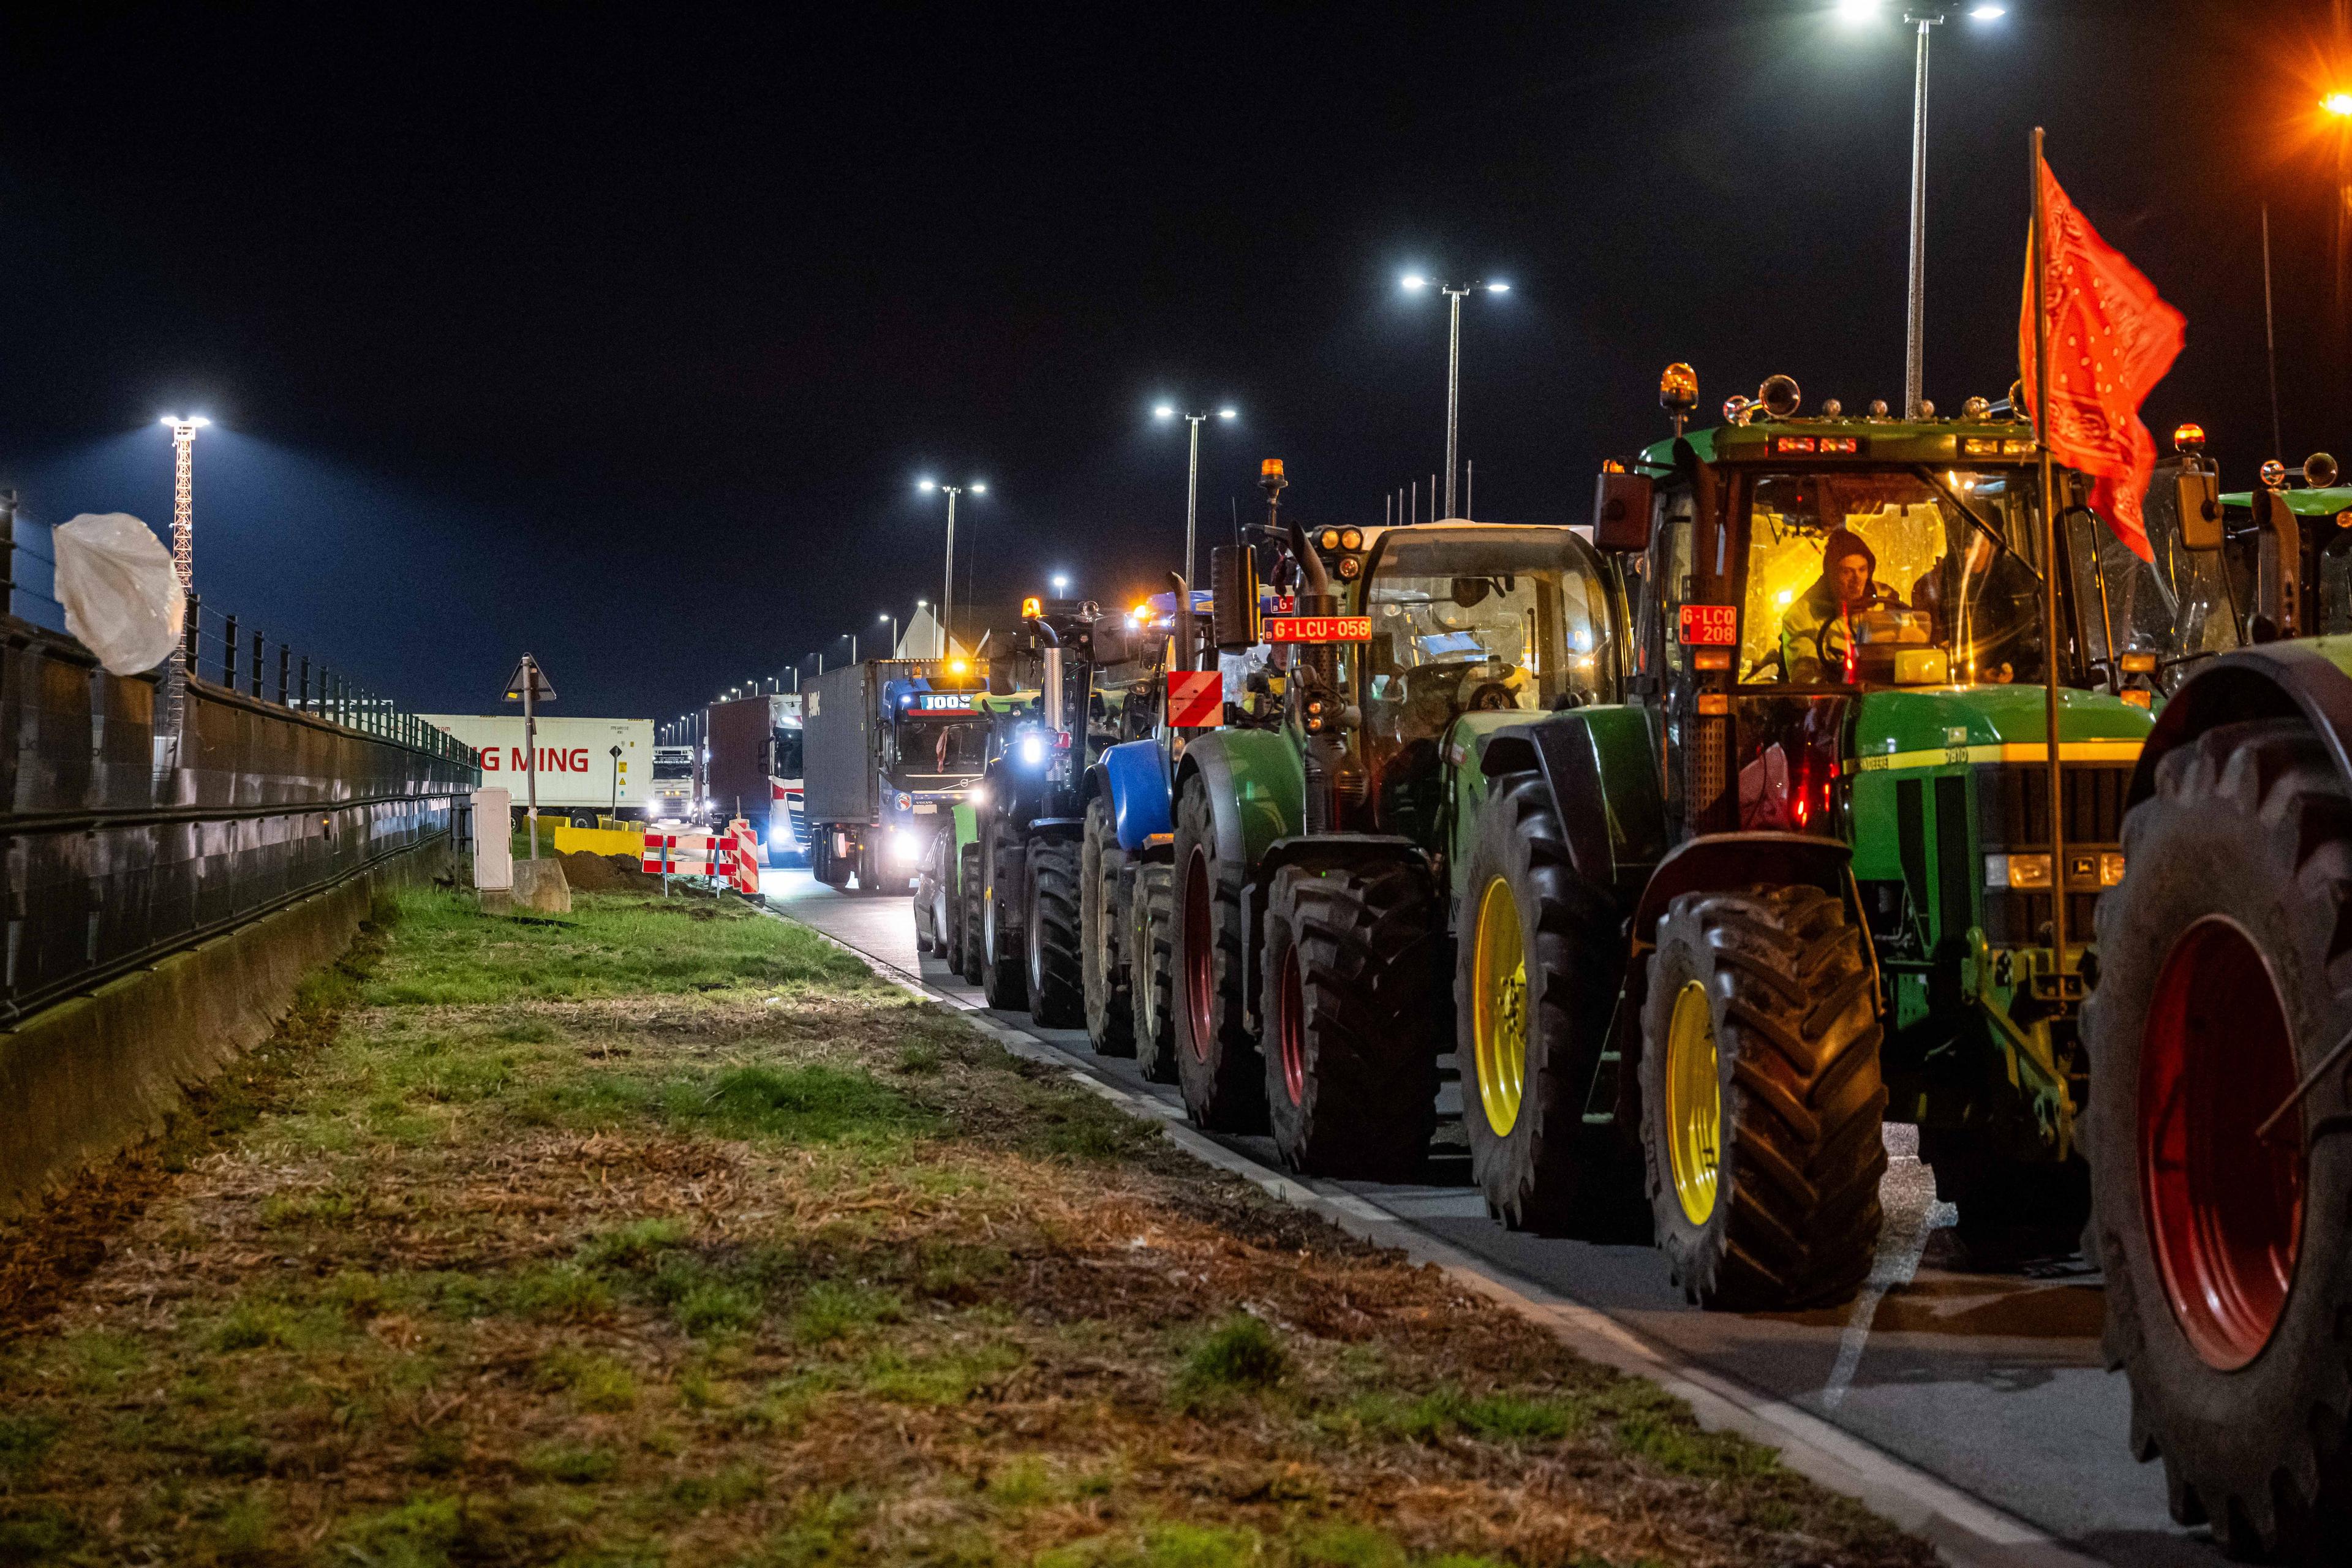 Jordbrukare har samlats med sina traktorer för att protestera i närheten av Antwerpens hamn tisdagen den 13 februari. Aktionen organiserades av flera jordbruksfackföreningar. Foto: Jonas Roosens/BELGA MAG/AFP via Getty Images